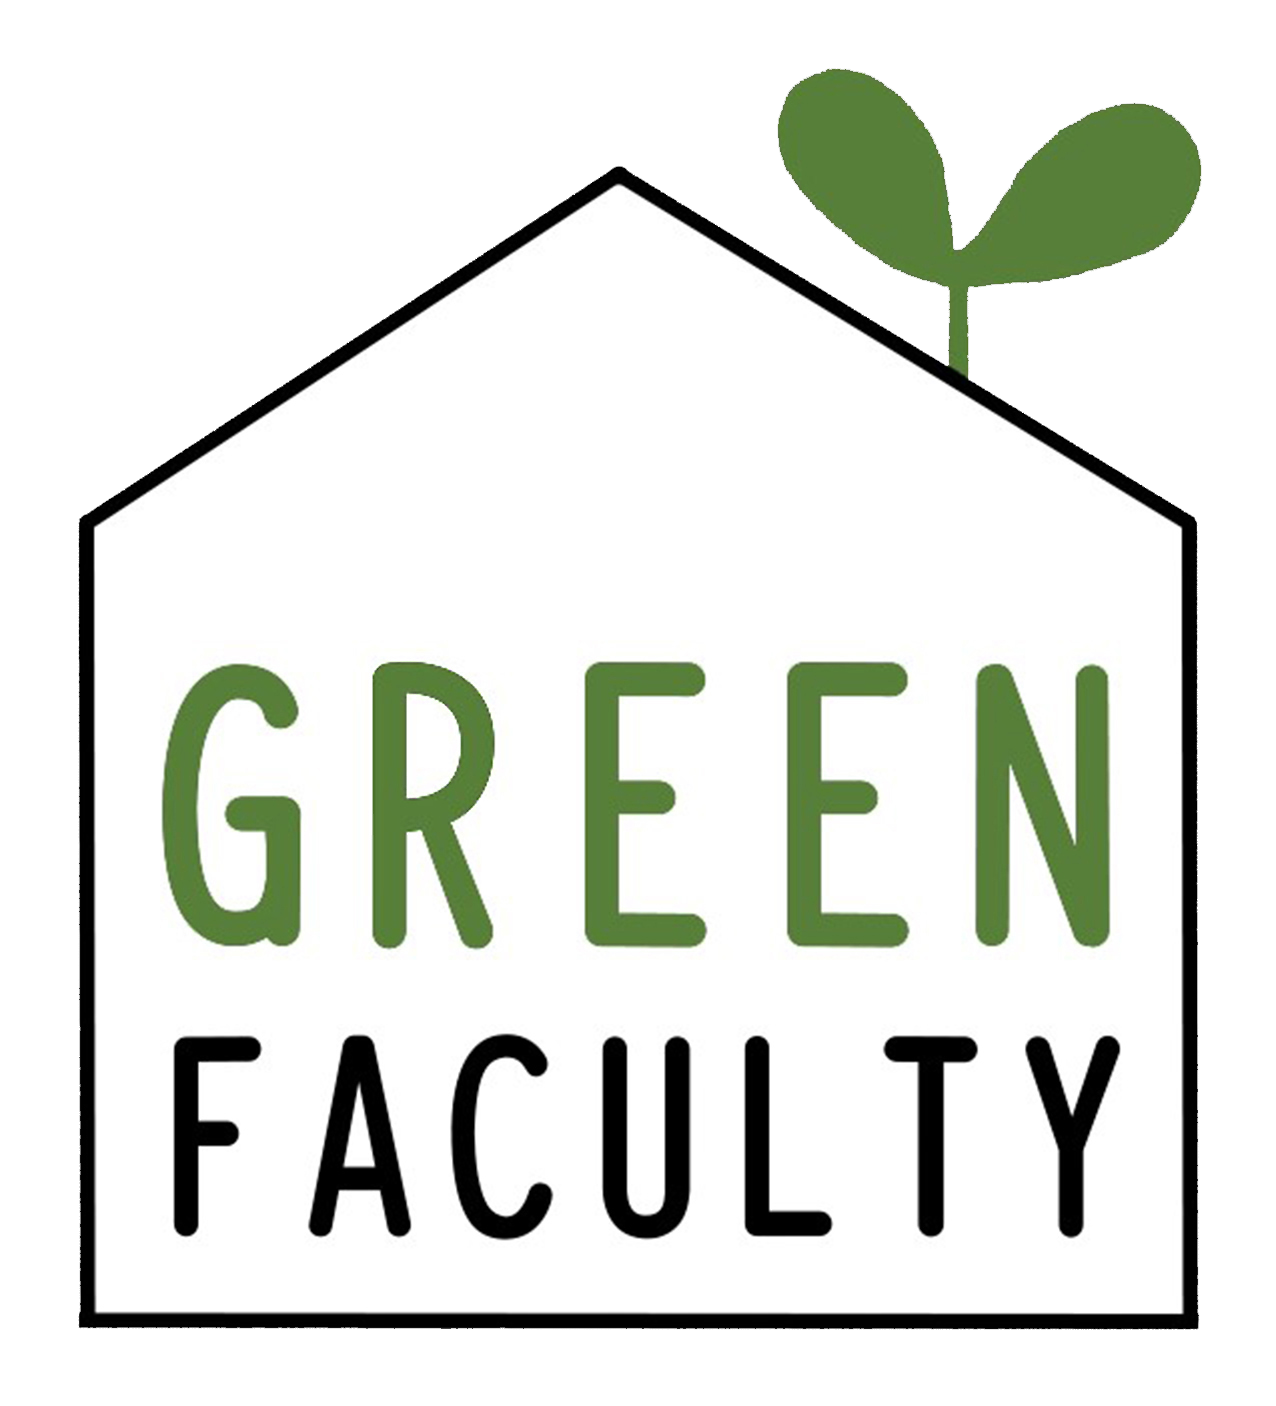 Green Faculty